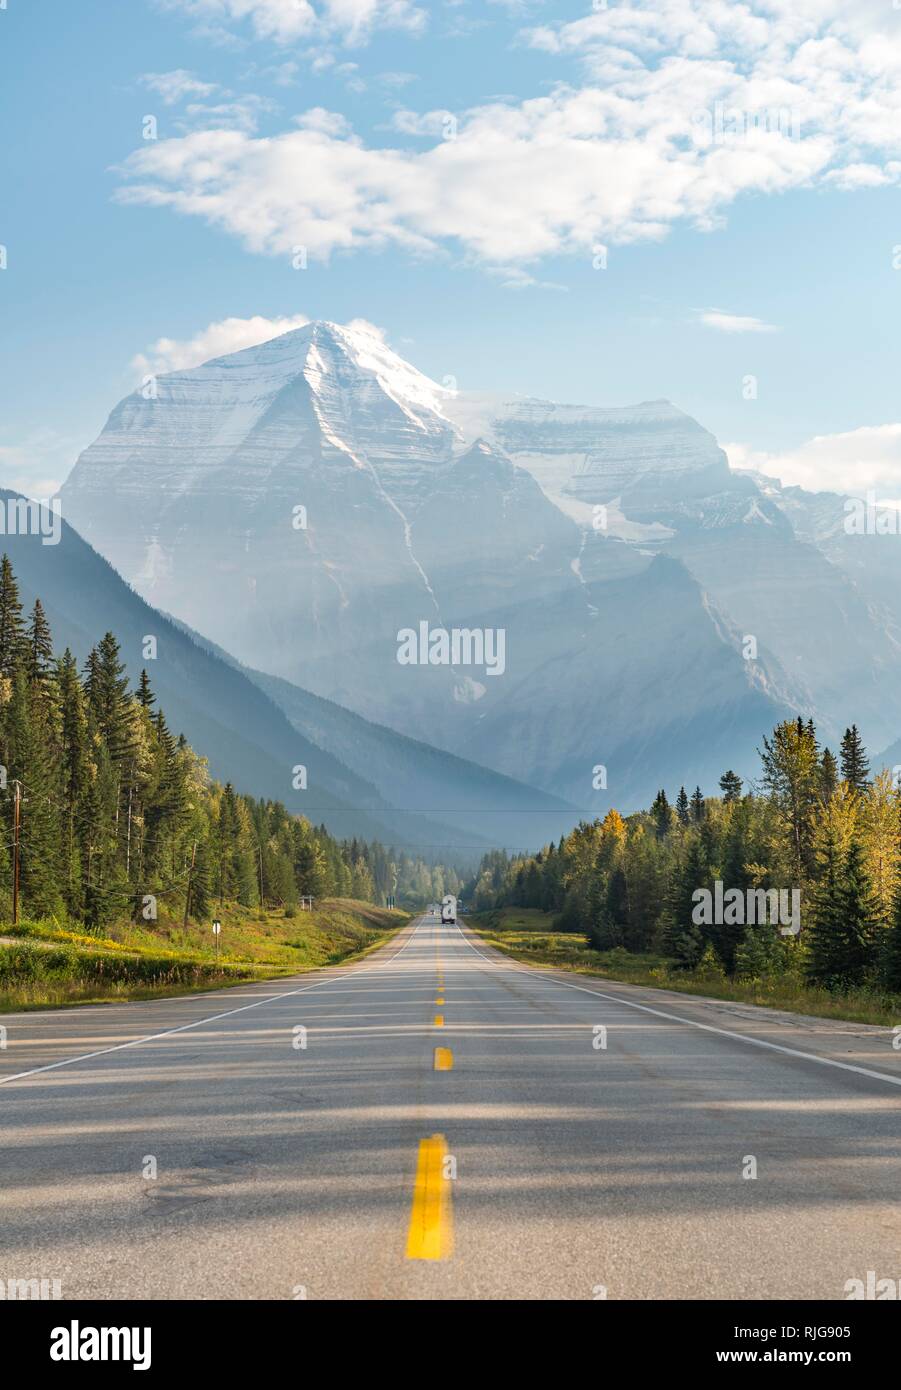 Autobahn, schneebedeckten Bergen und auf der Rückseite mit einer Kappe bedeckt, Mount Robson, Yellowhead Highway 16, British Columbia, Kanada Stockfoto